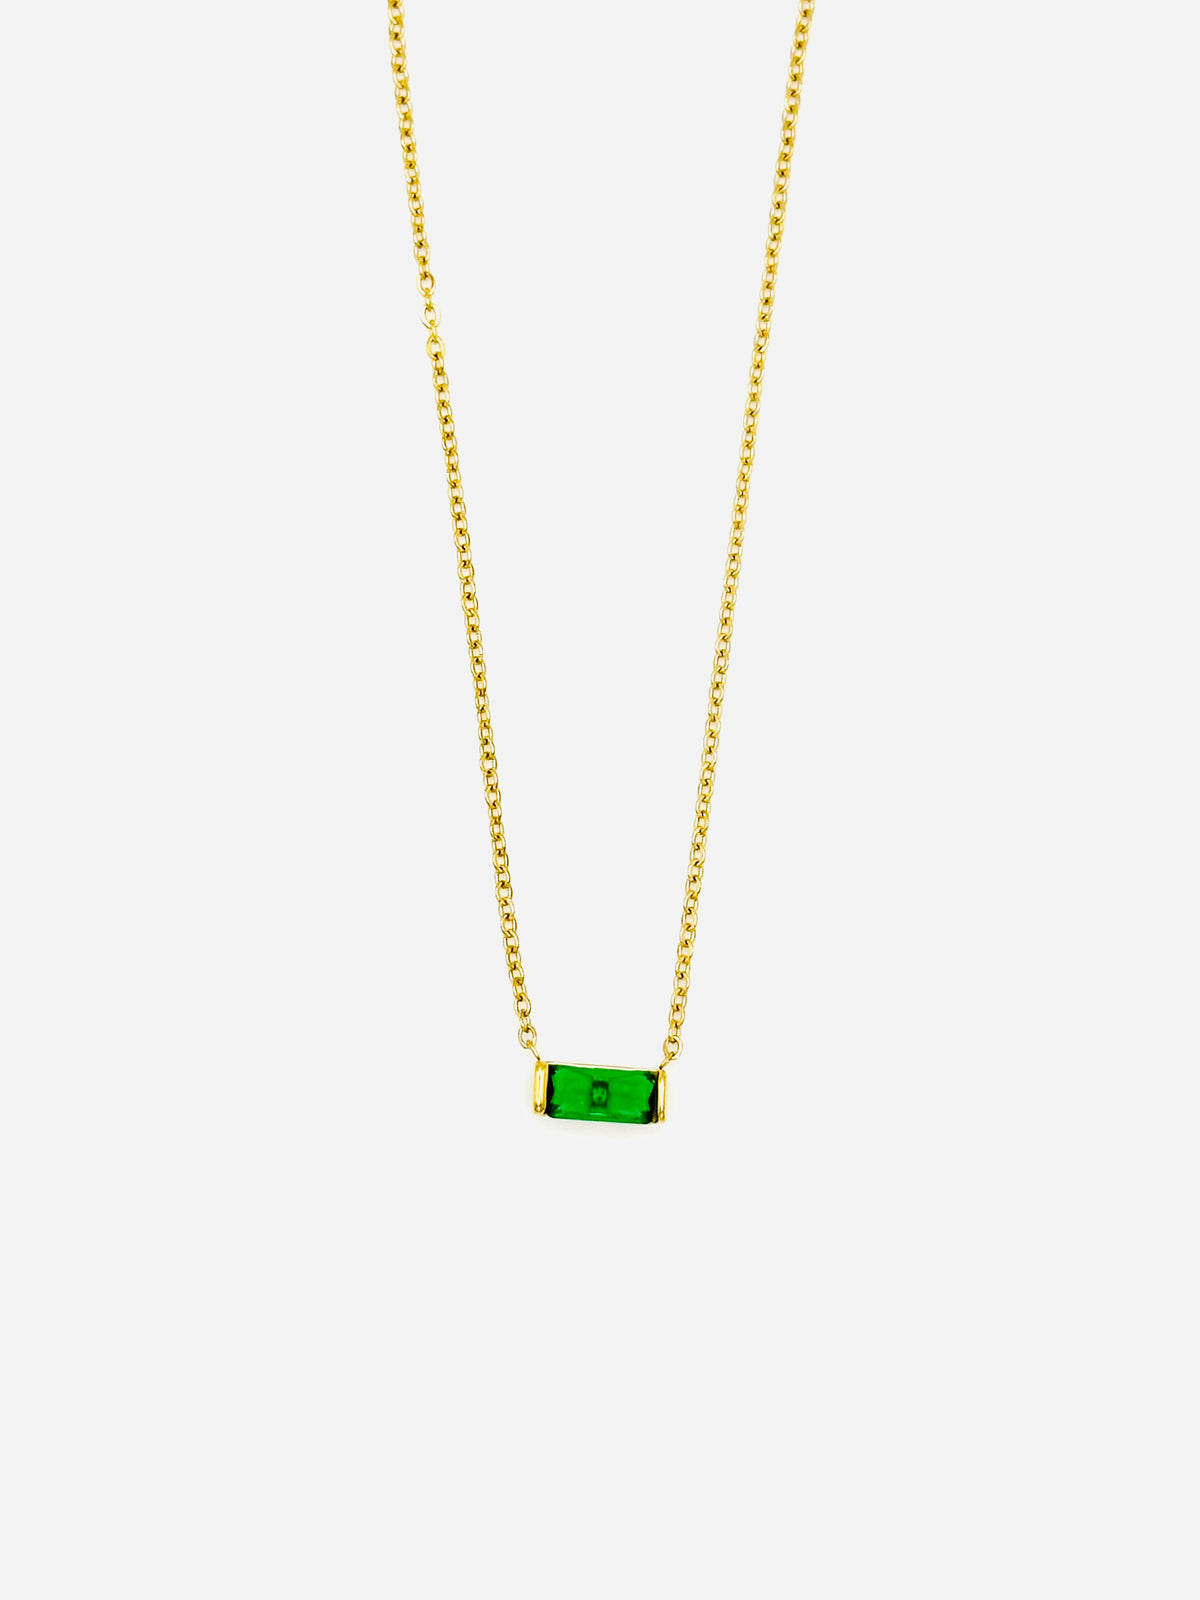 Emerald birthstone - May